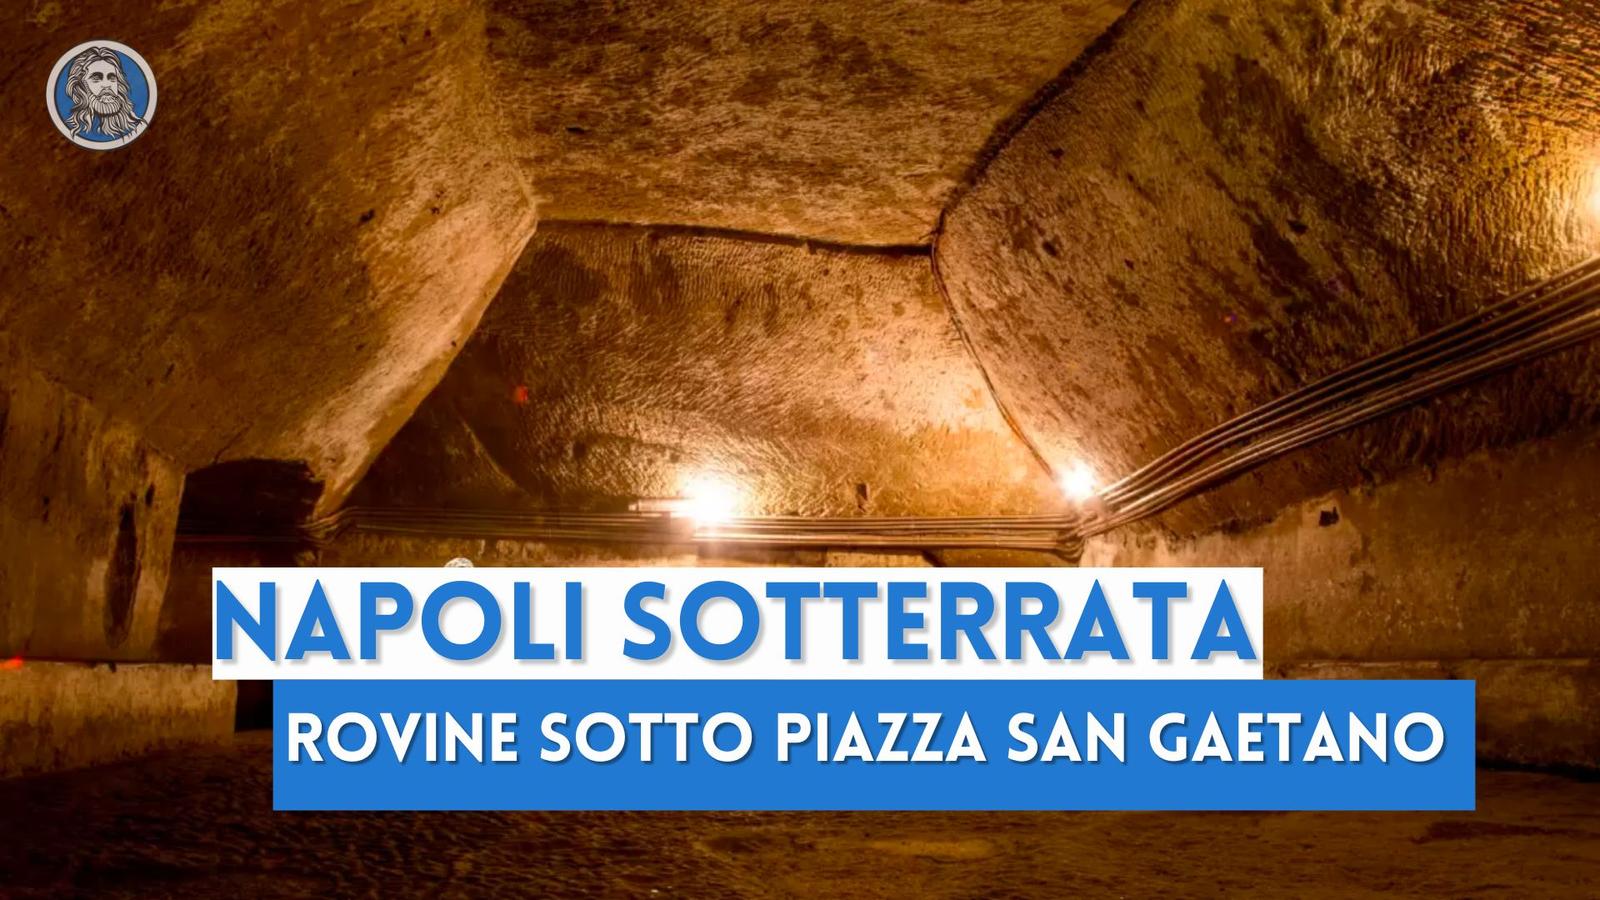 Napoli Sotterrata, Galleria Borbonica e tutti gli ipogei greci e romani: il sottosuolo di Napoli è una miniera